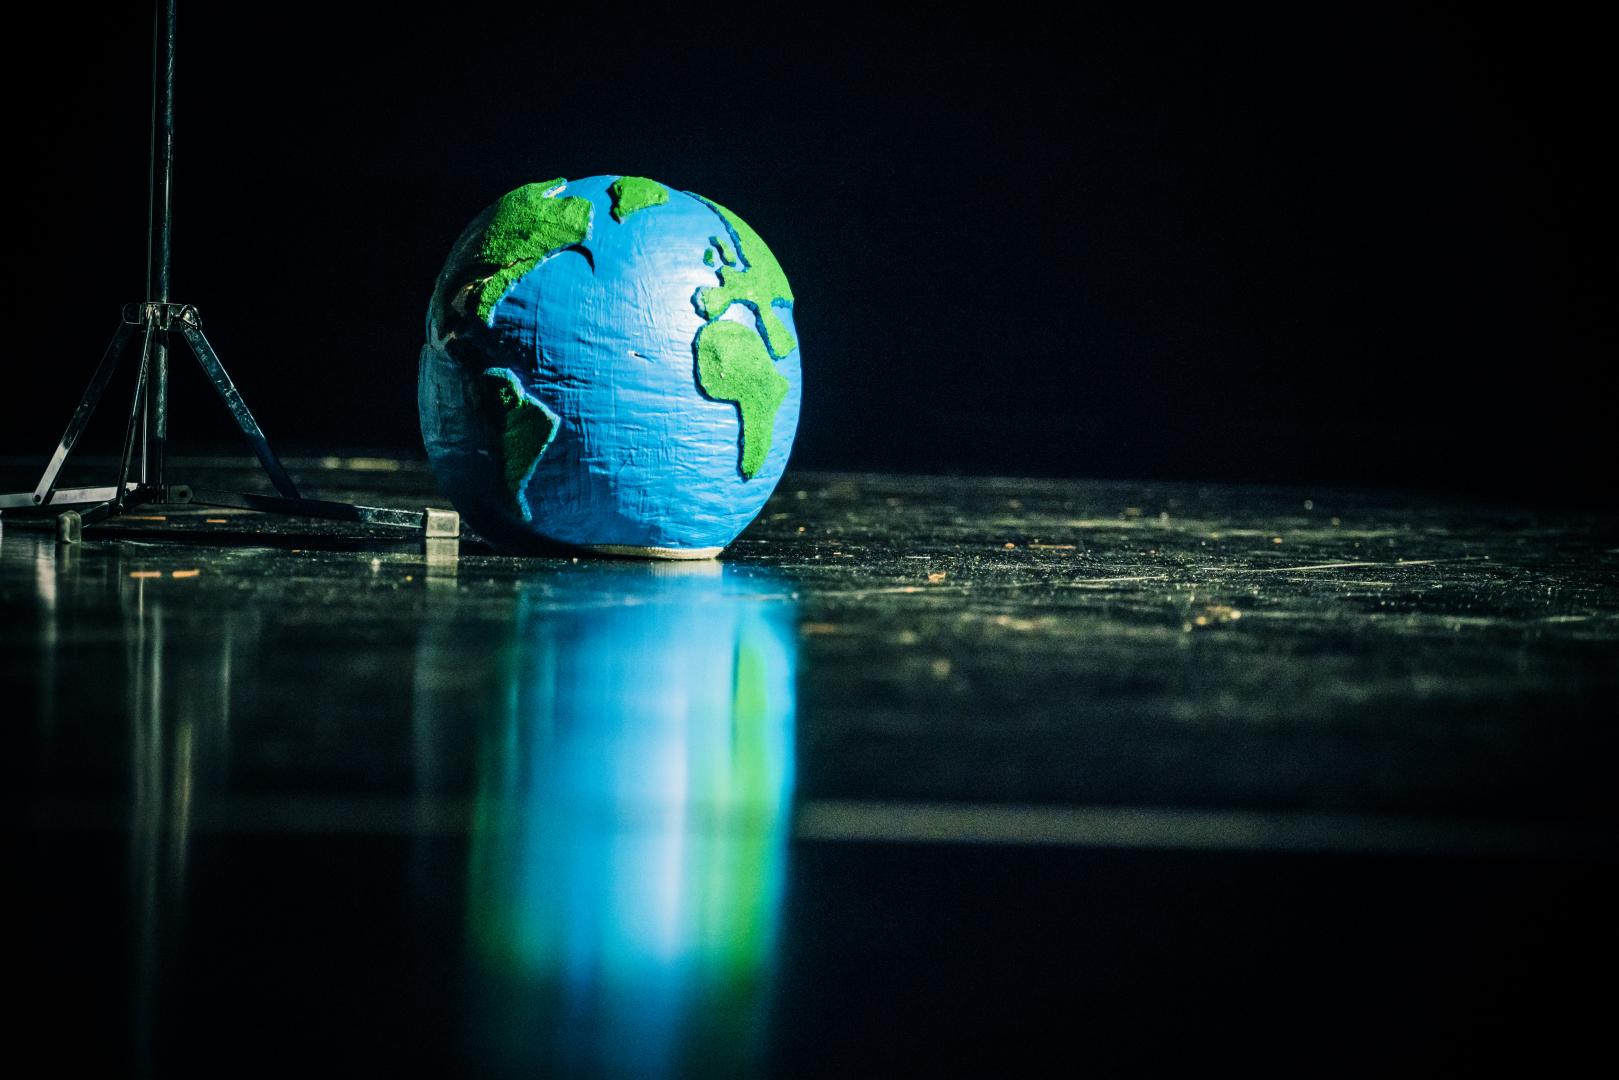 Ein Modell der Erde liegt auf dem Boden einer schwarzen Bühne.